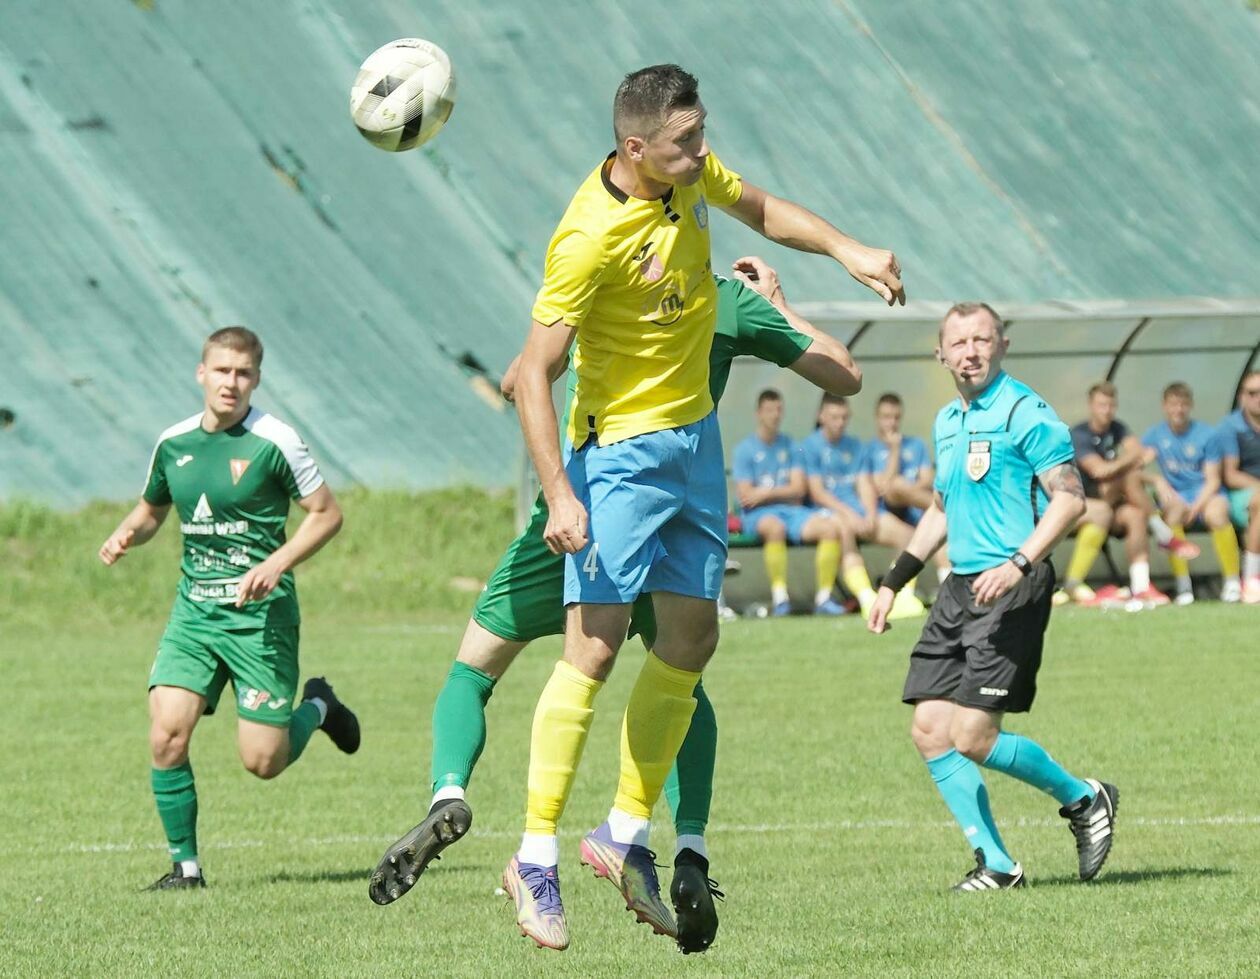  Lublinianka vs Stal Kraśnik 0:2 (zdjęcie 17) - Autor: DW